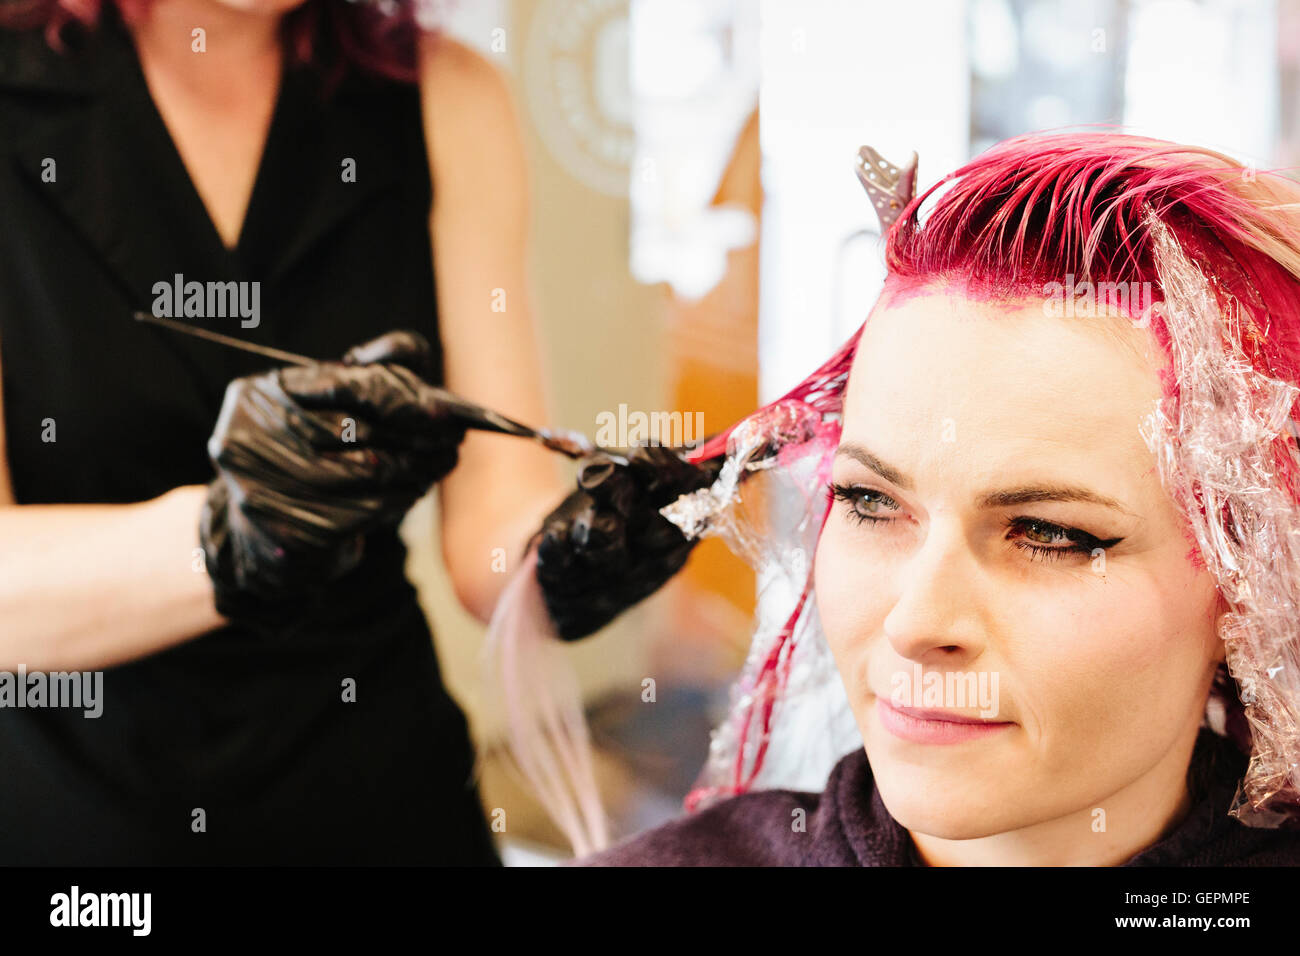 Une femme dans un salon de coiffure ayant une couleur de cheveux rose appliqué à ses cheveux blonds. Banque D'Images